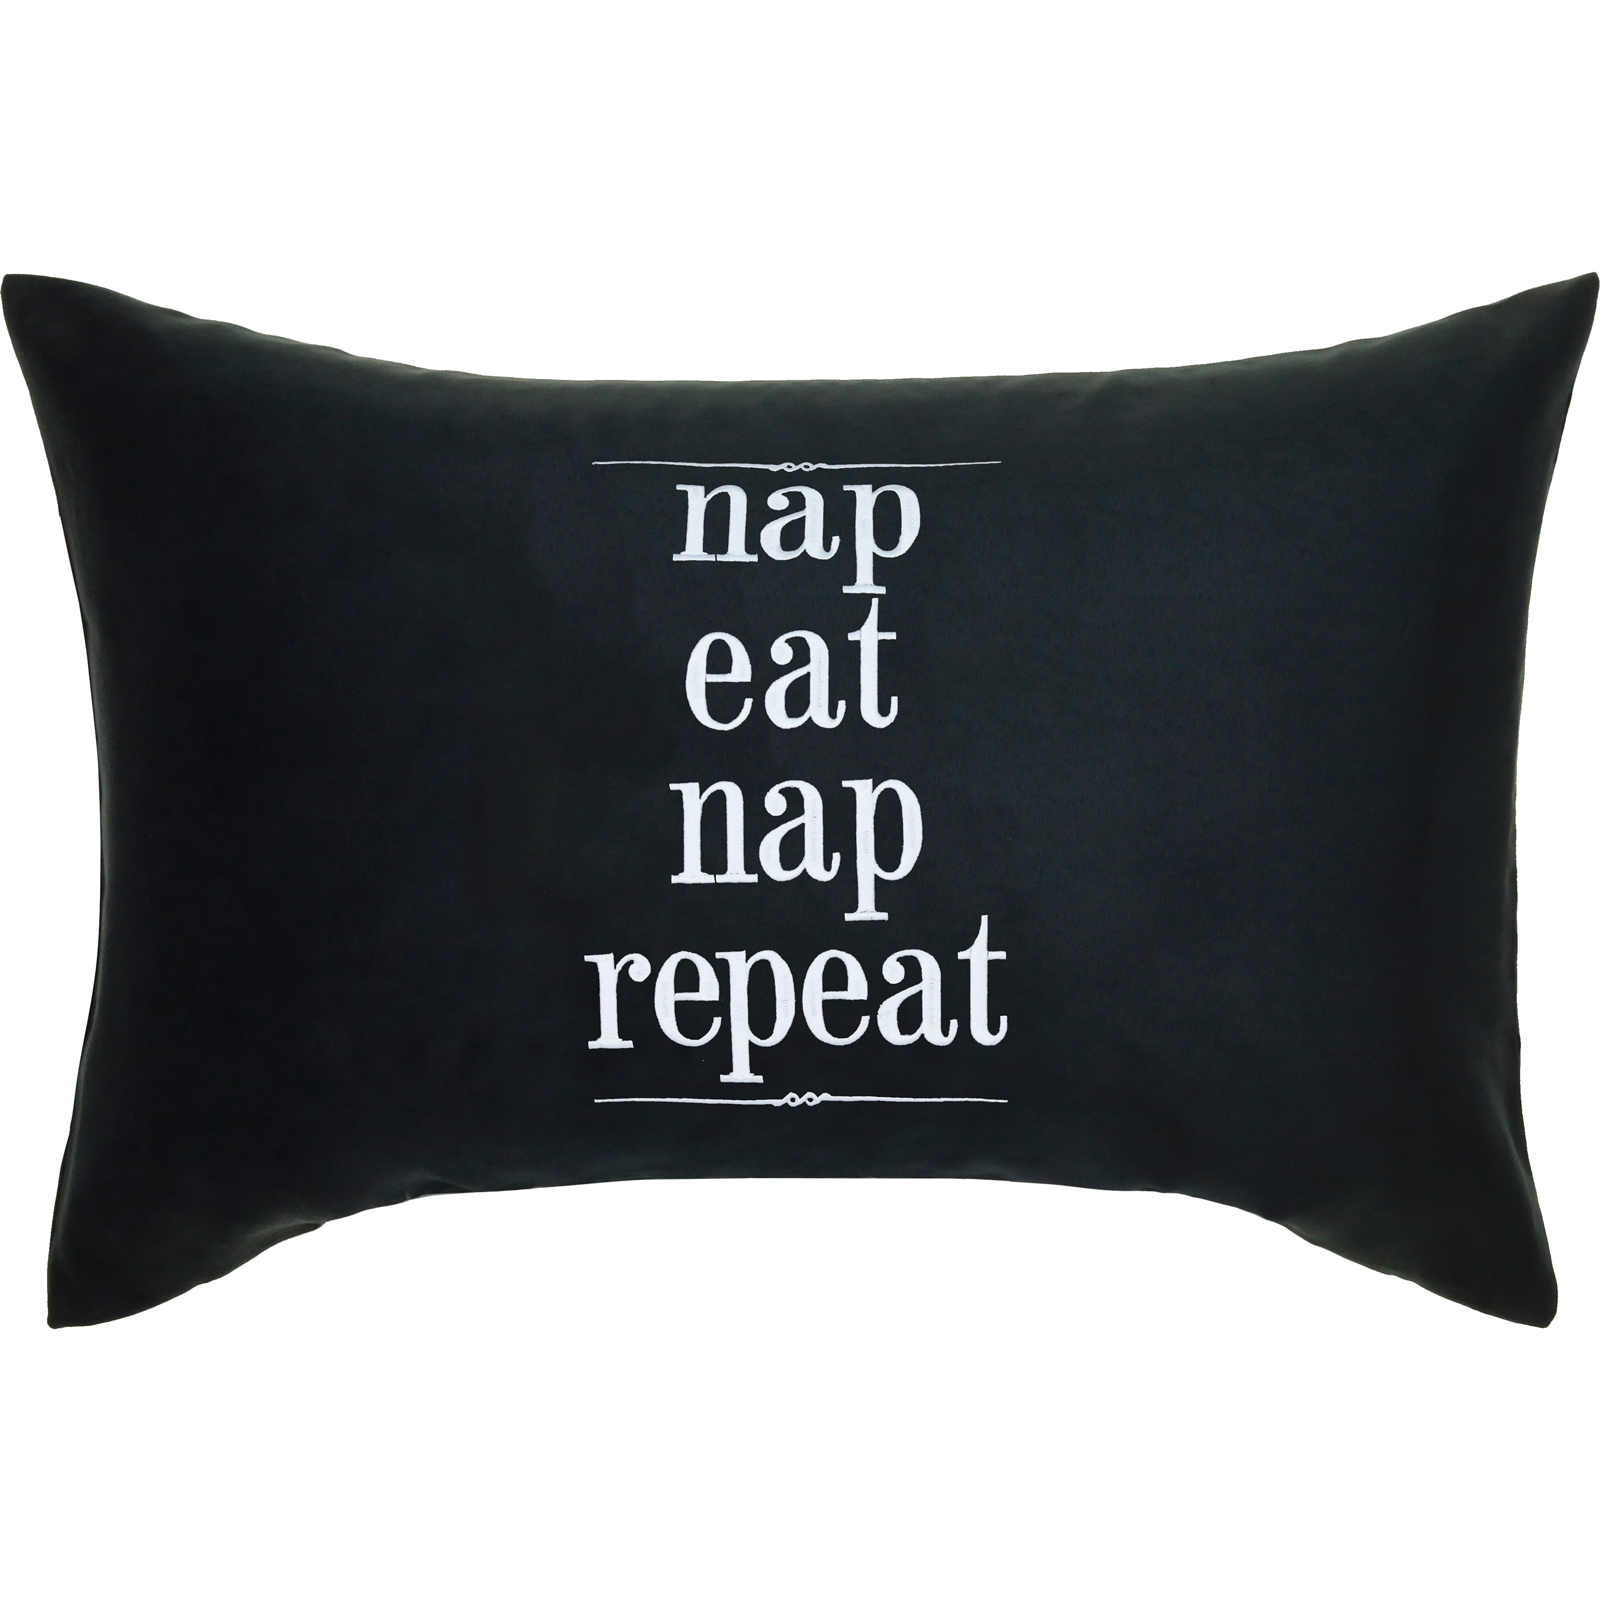 nap eat nap repeat